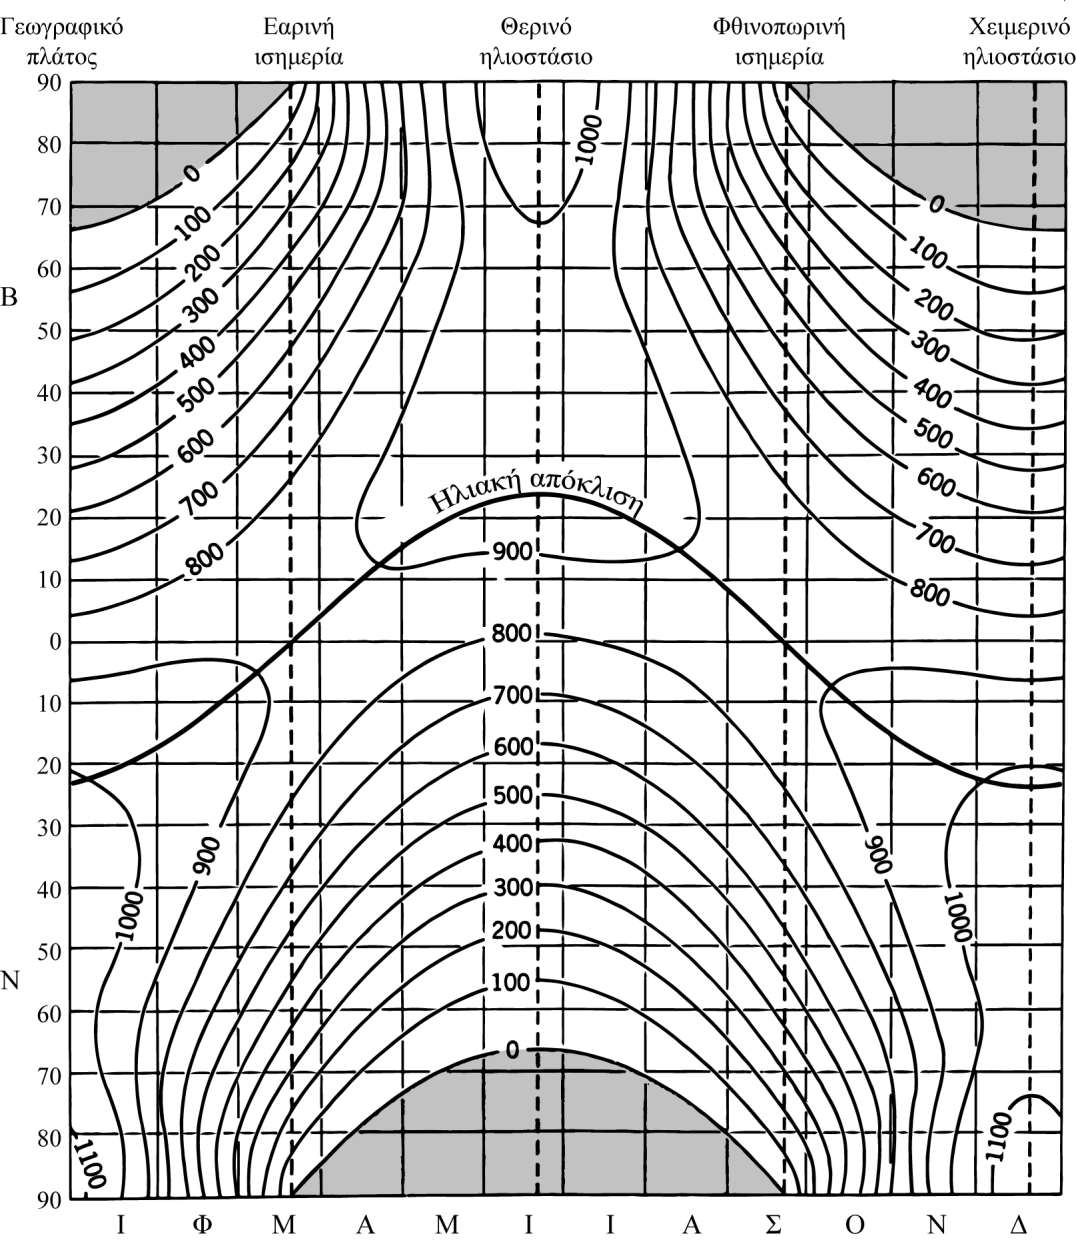 Σχήμα 3.3 Κατανομή της ηλιακής ακτινοβολίας στα ανώτερα όρια της ατμόσφαιρας (Ζαμπάκας, 1981).